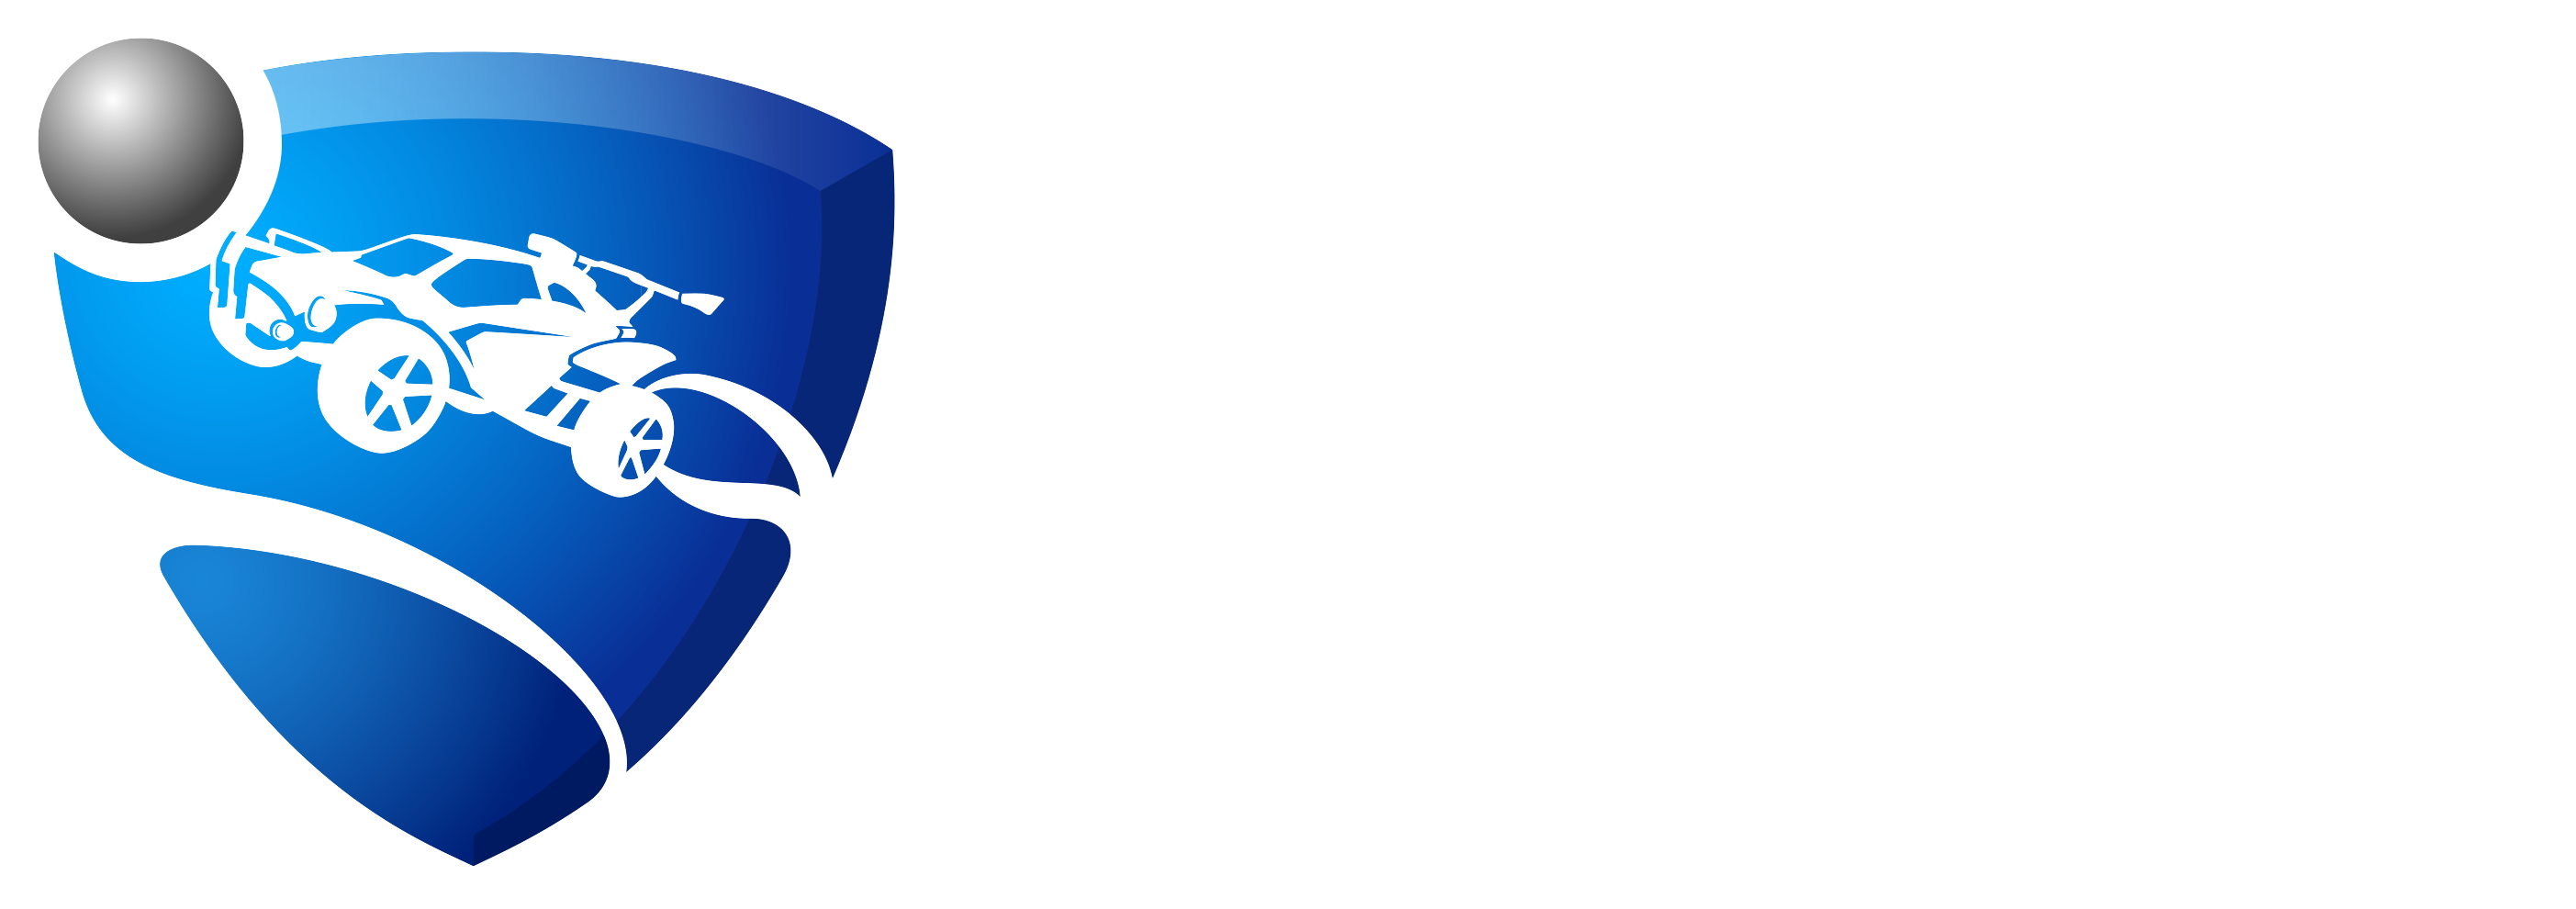 Rocket League Logo PNG Photos